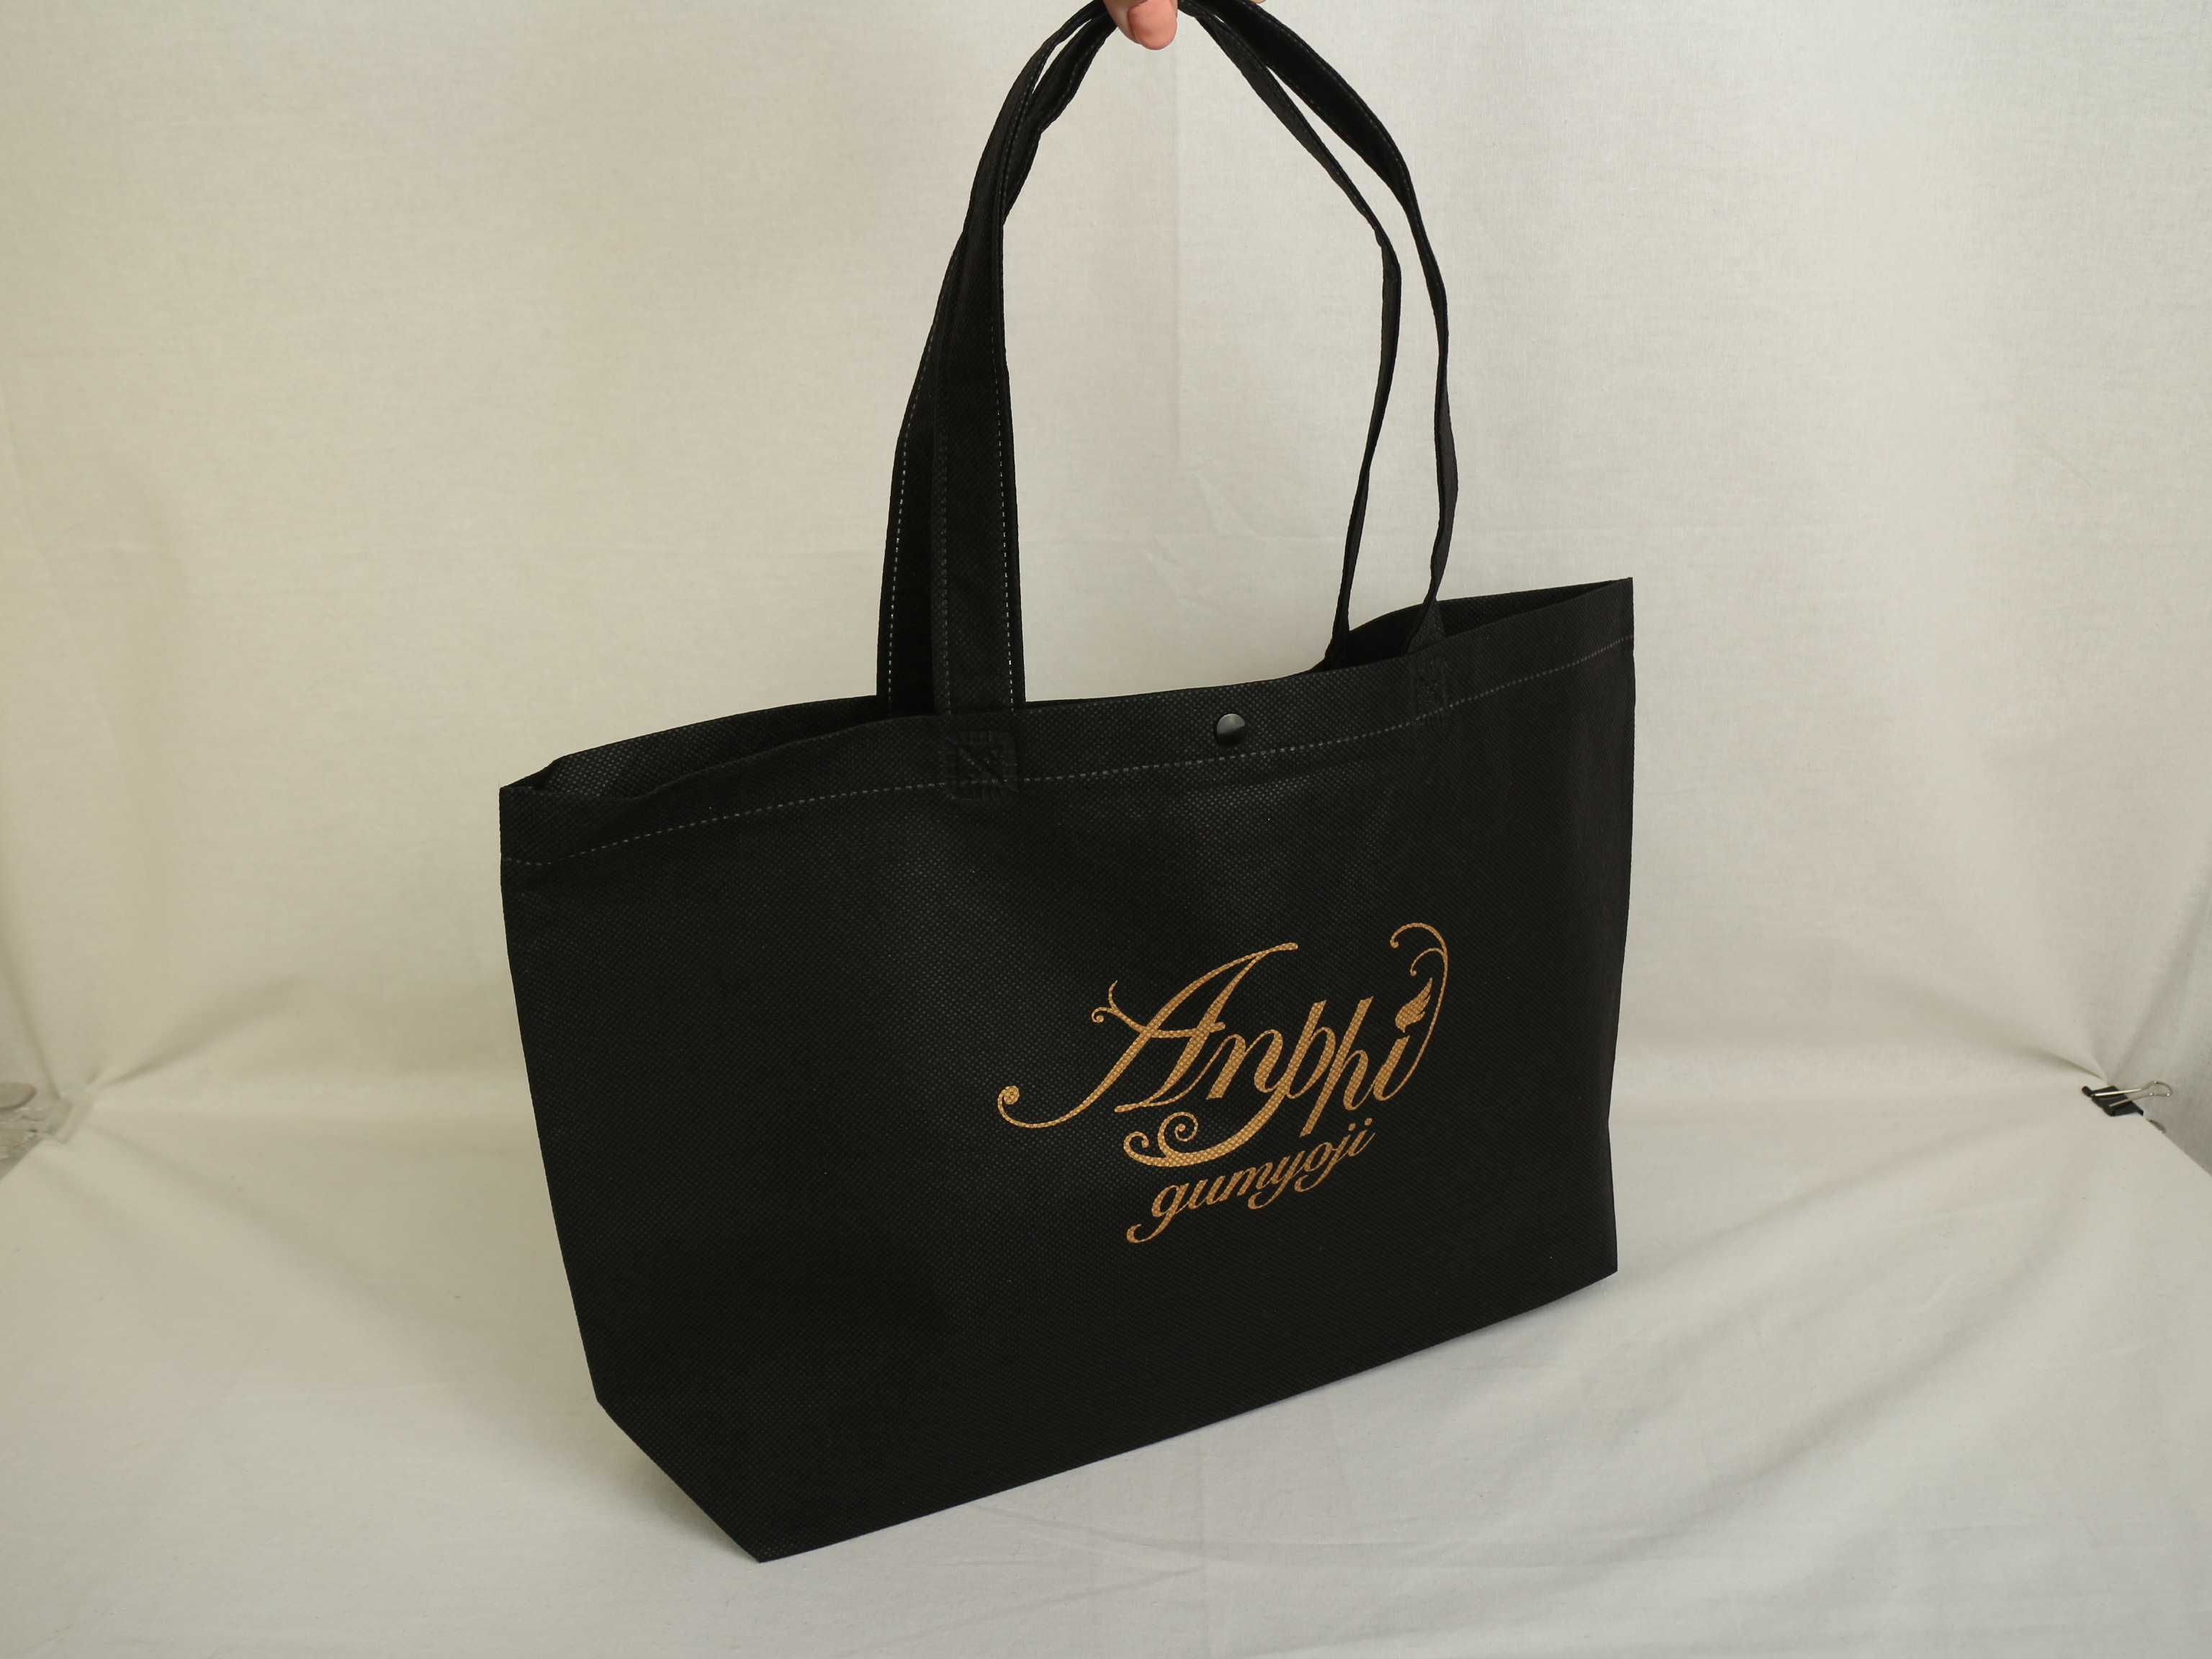 神奈川のヘアサロン様のオリジナル不織布バッグ